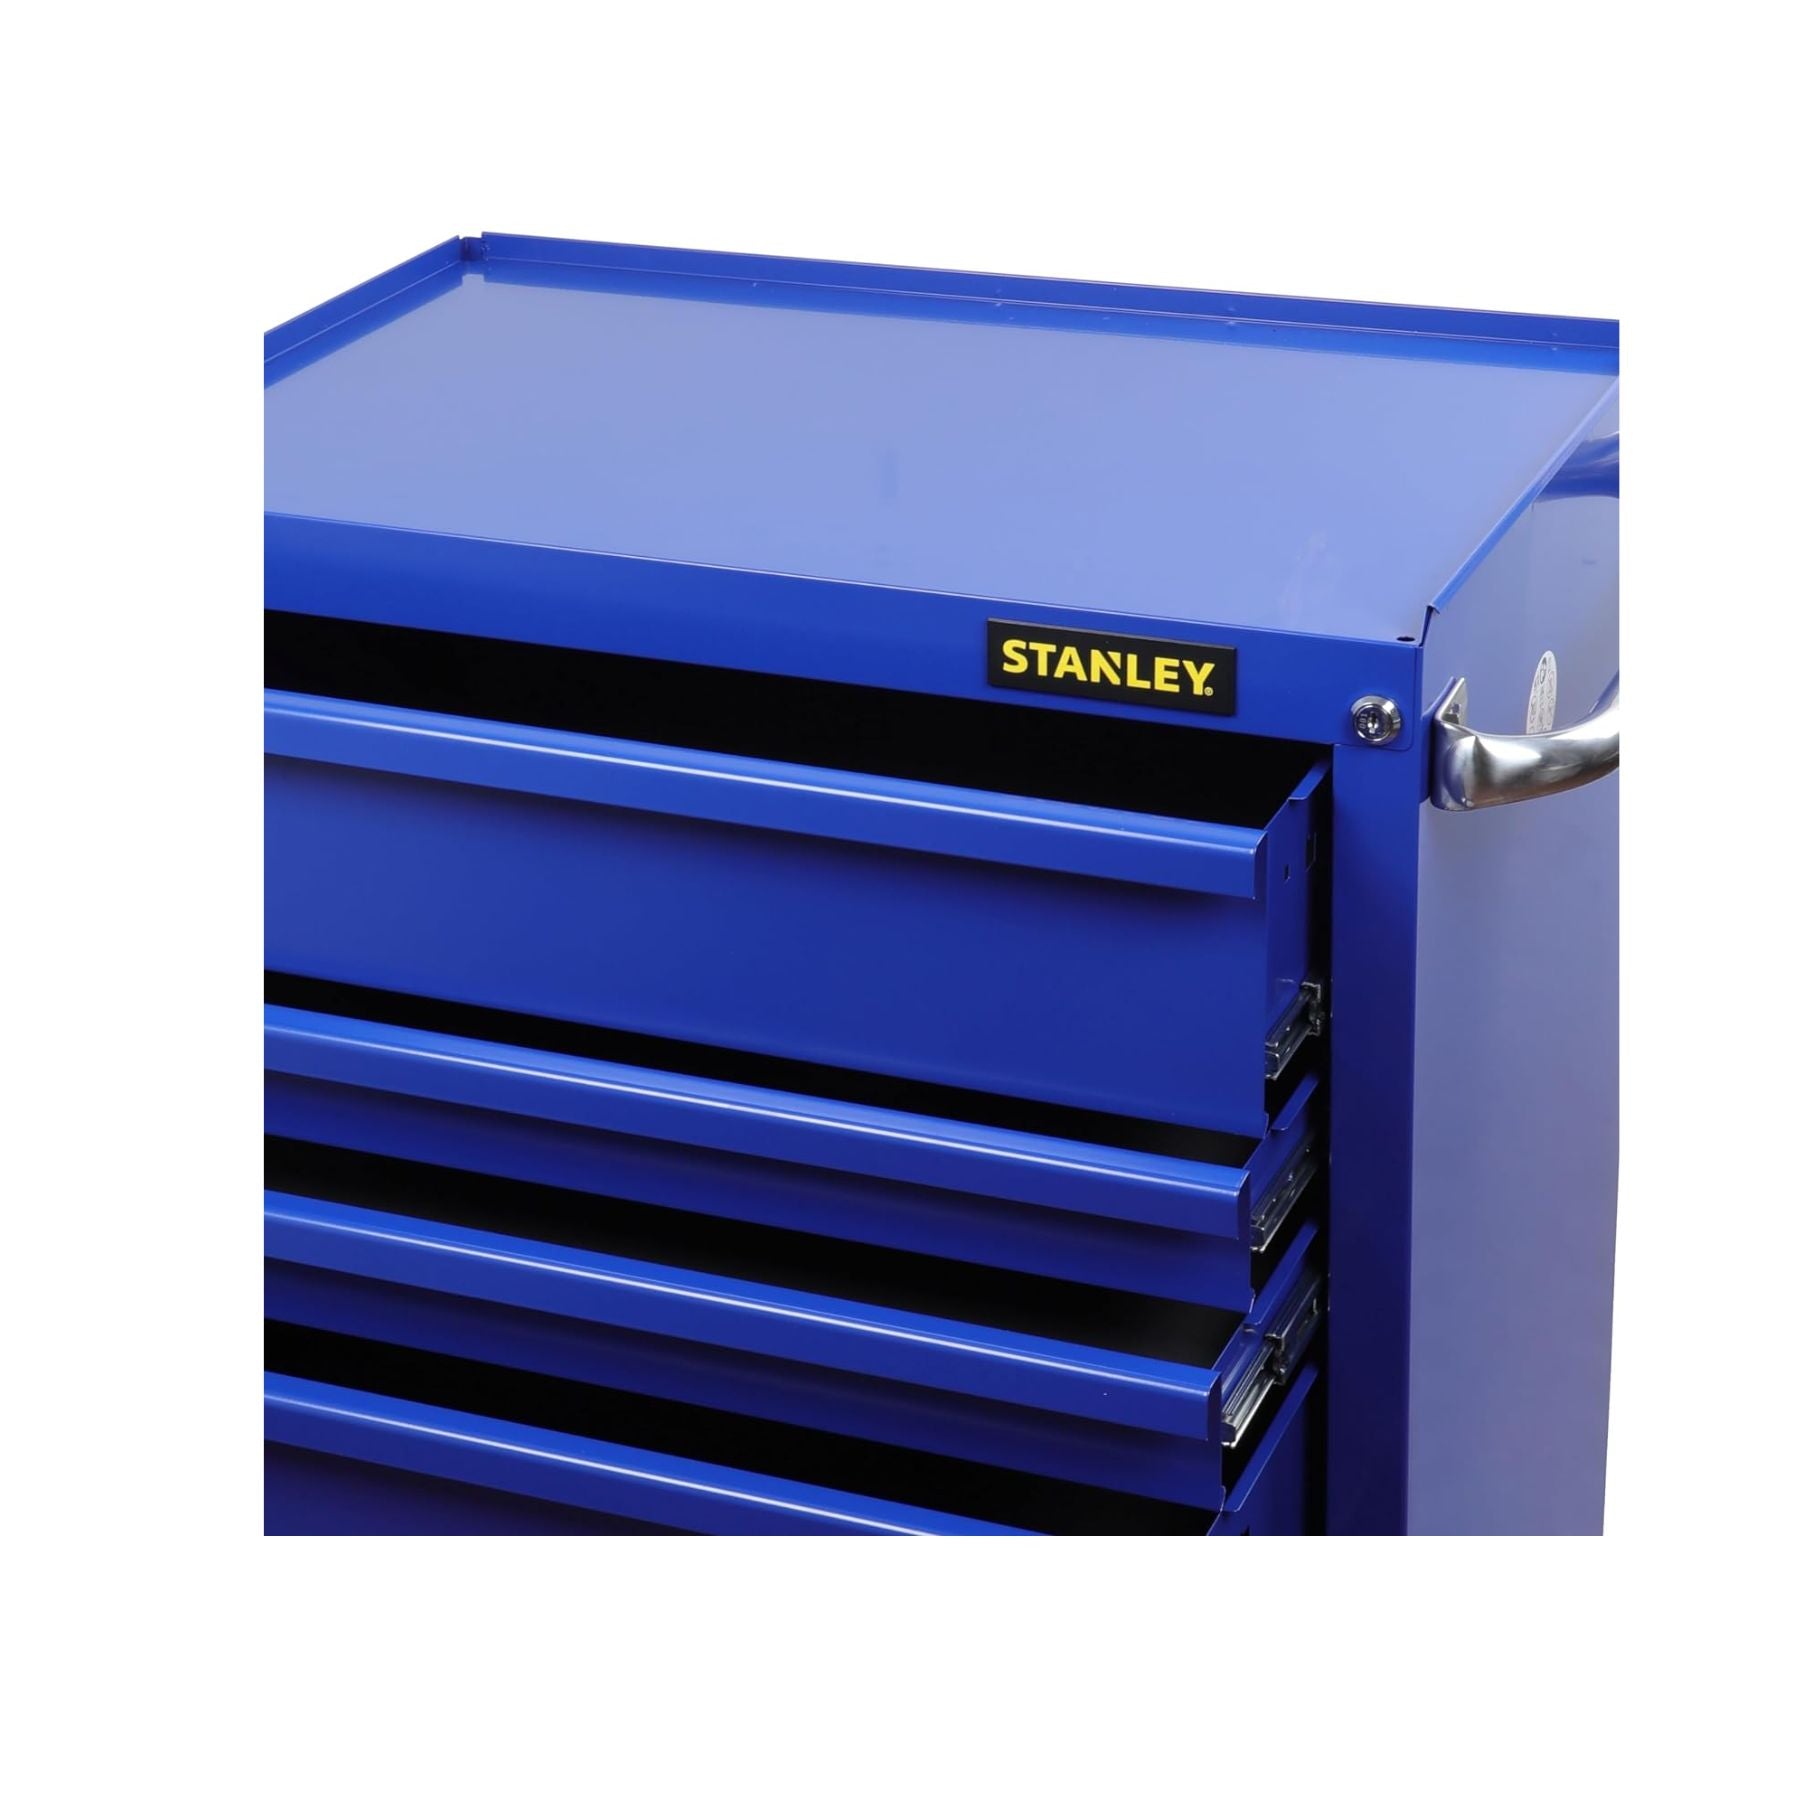 STST74421-8 Roller Cabinet 5 Drawer Blue